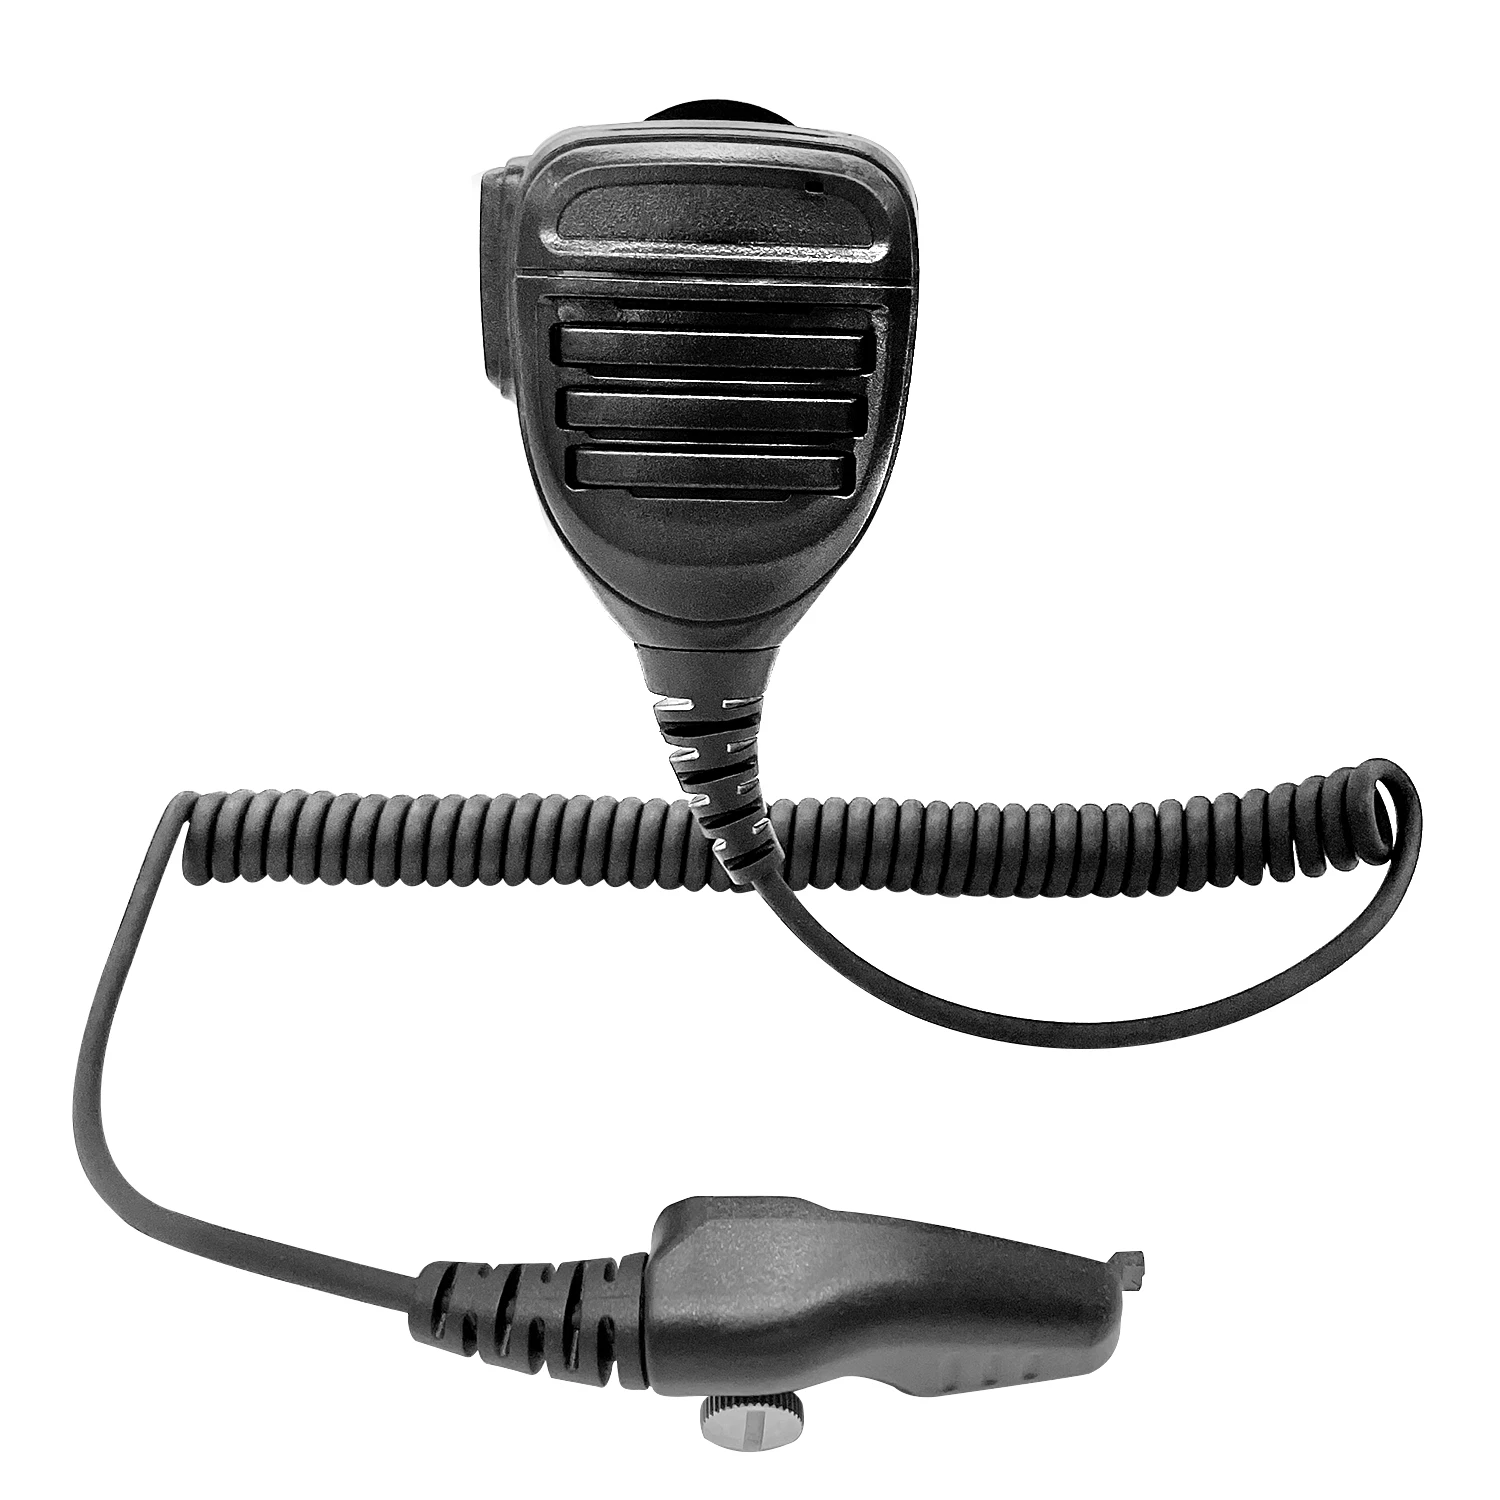 Remote Waterproof Speaker Mic,Microphone for Two Way Radio with Kenwood NEXEDGE, NX200, NX200S, NX210, NX210G,NX300,NX300S,NX410